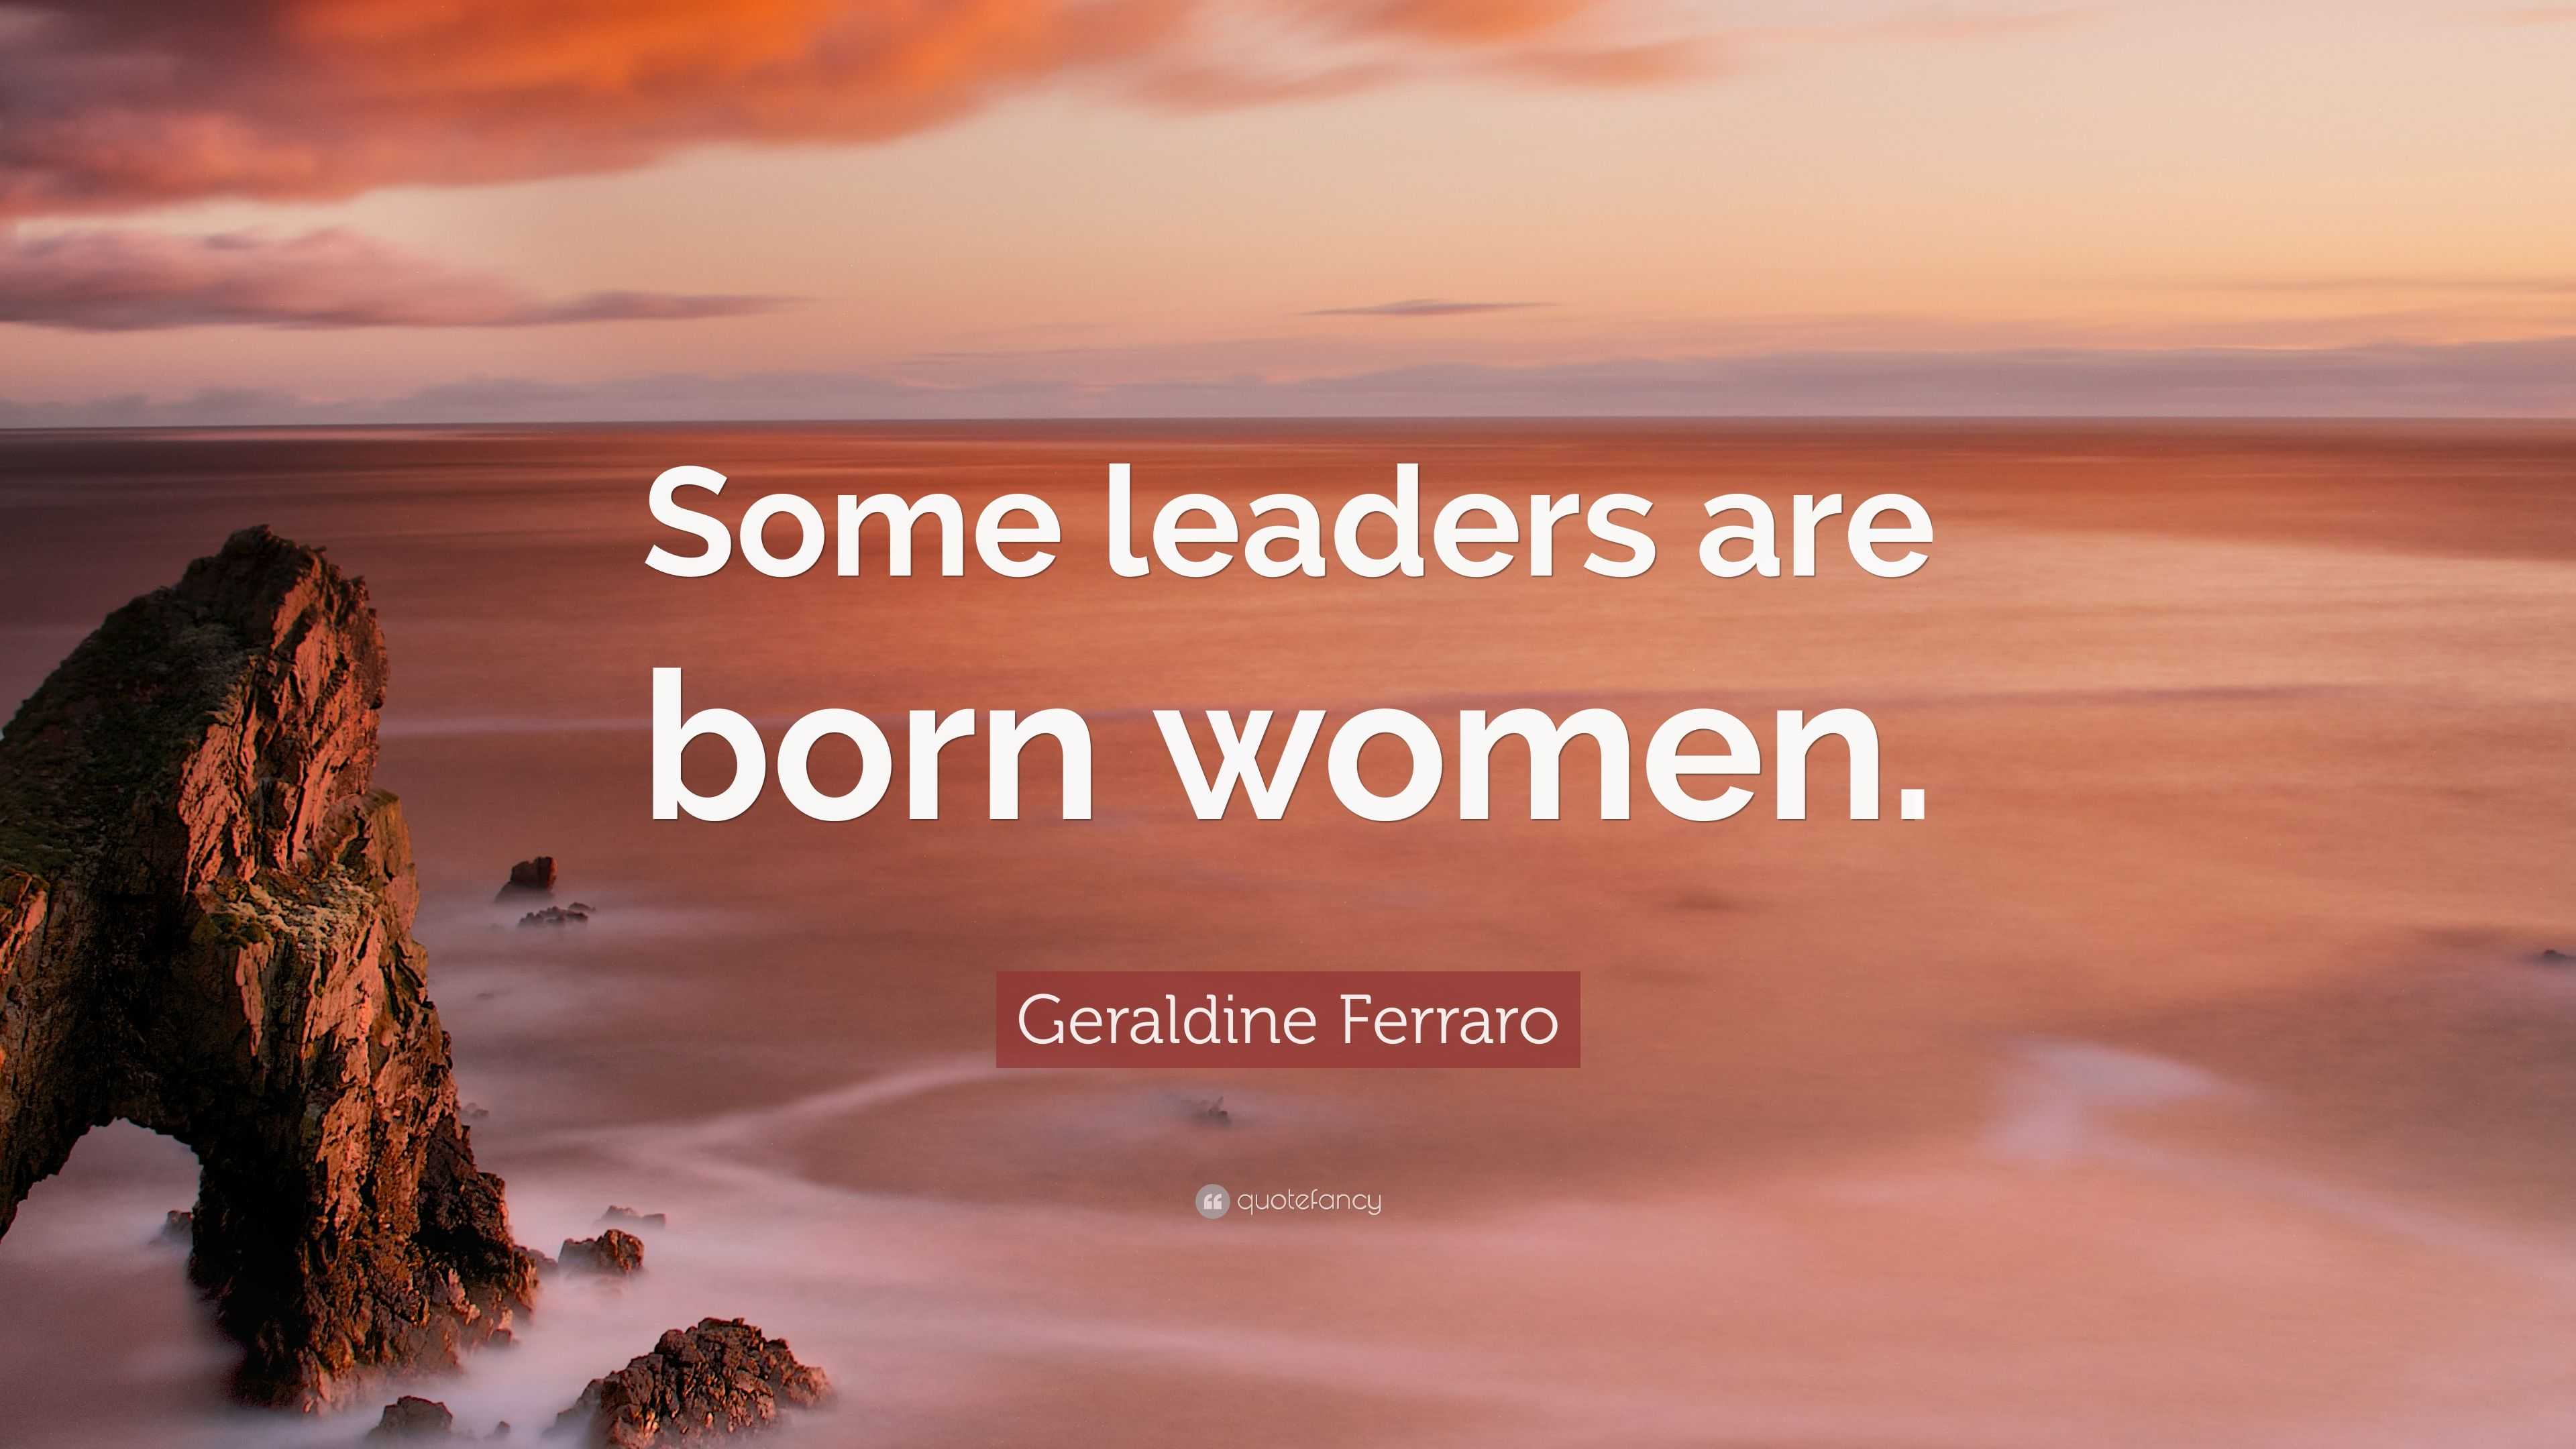 Geraldine Ferraro Quote: “Some leaders are born women.”